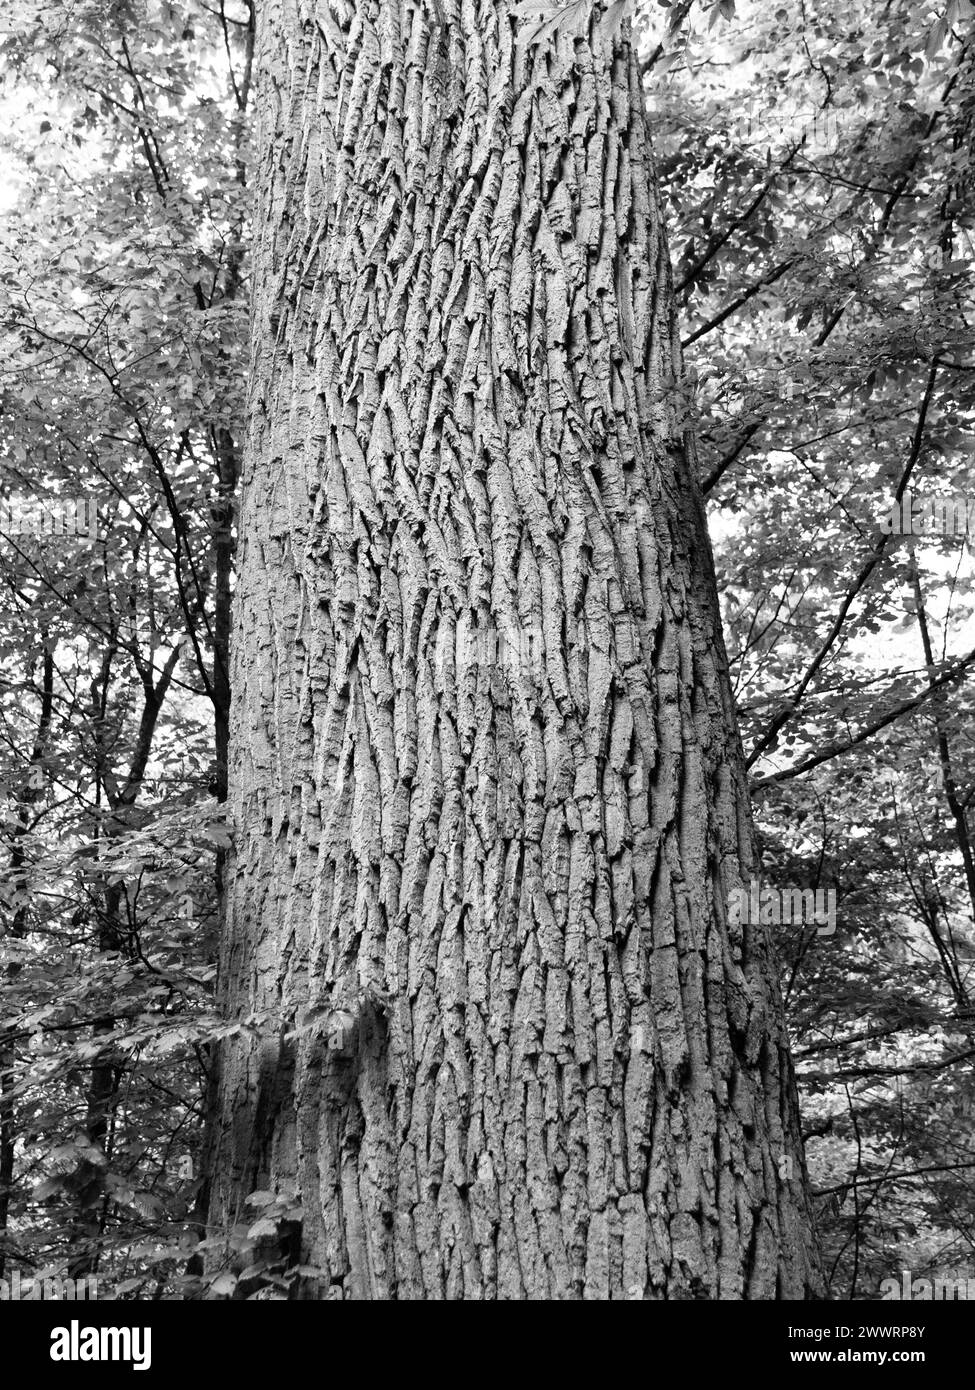 Vista dettagliata del tronco dell'albero e della corteccia dell'albero con sfondo della foresta. Immagine in bianco e nero. Foto Stock